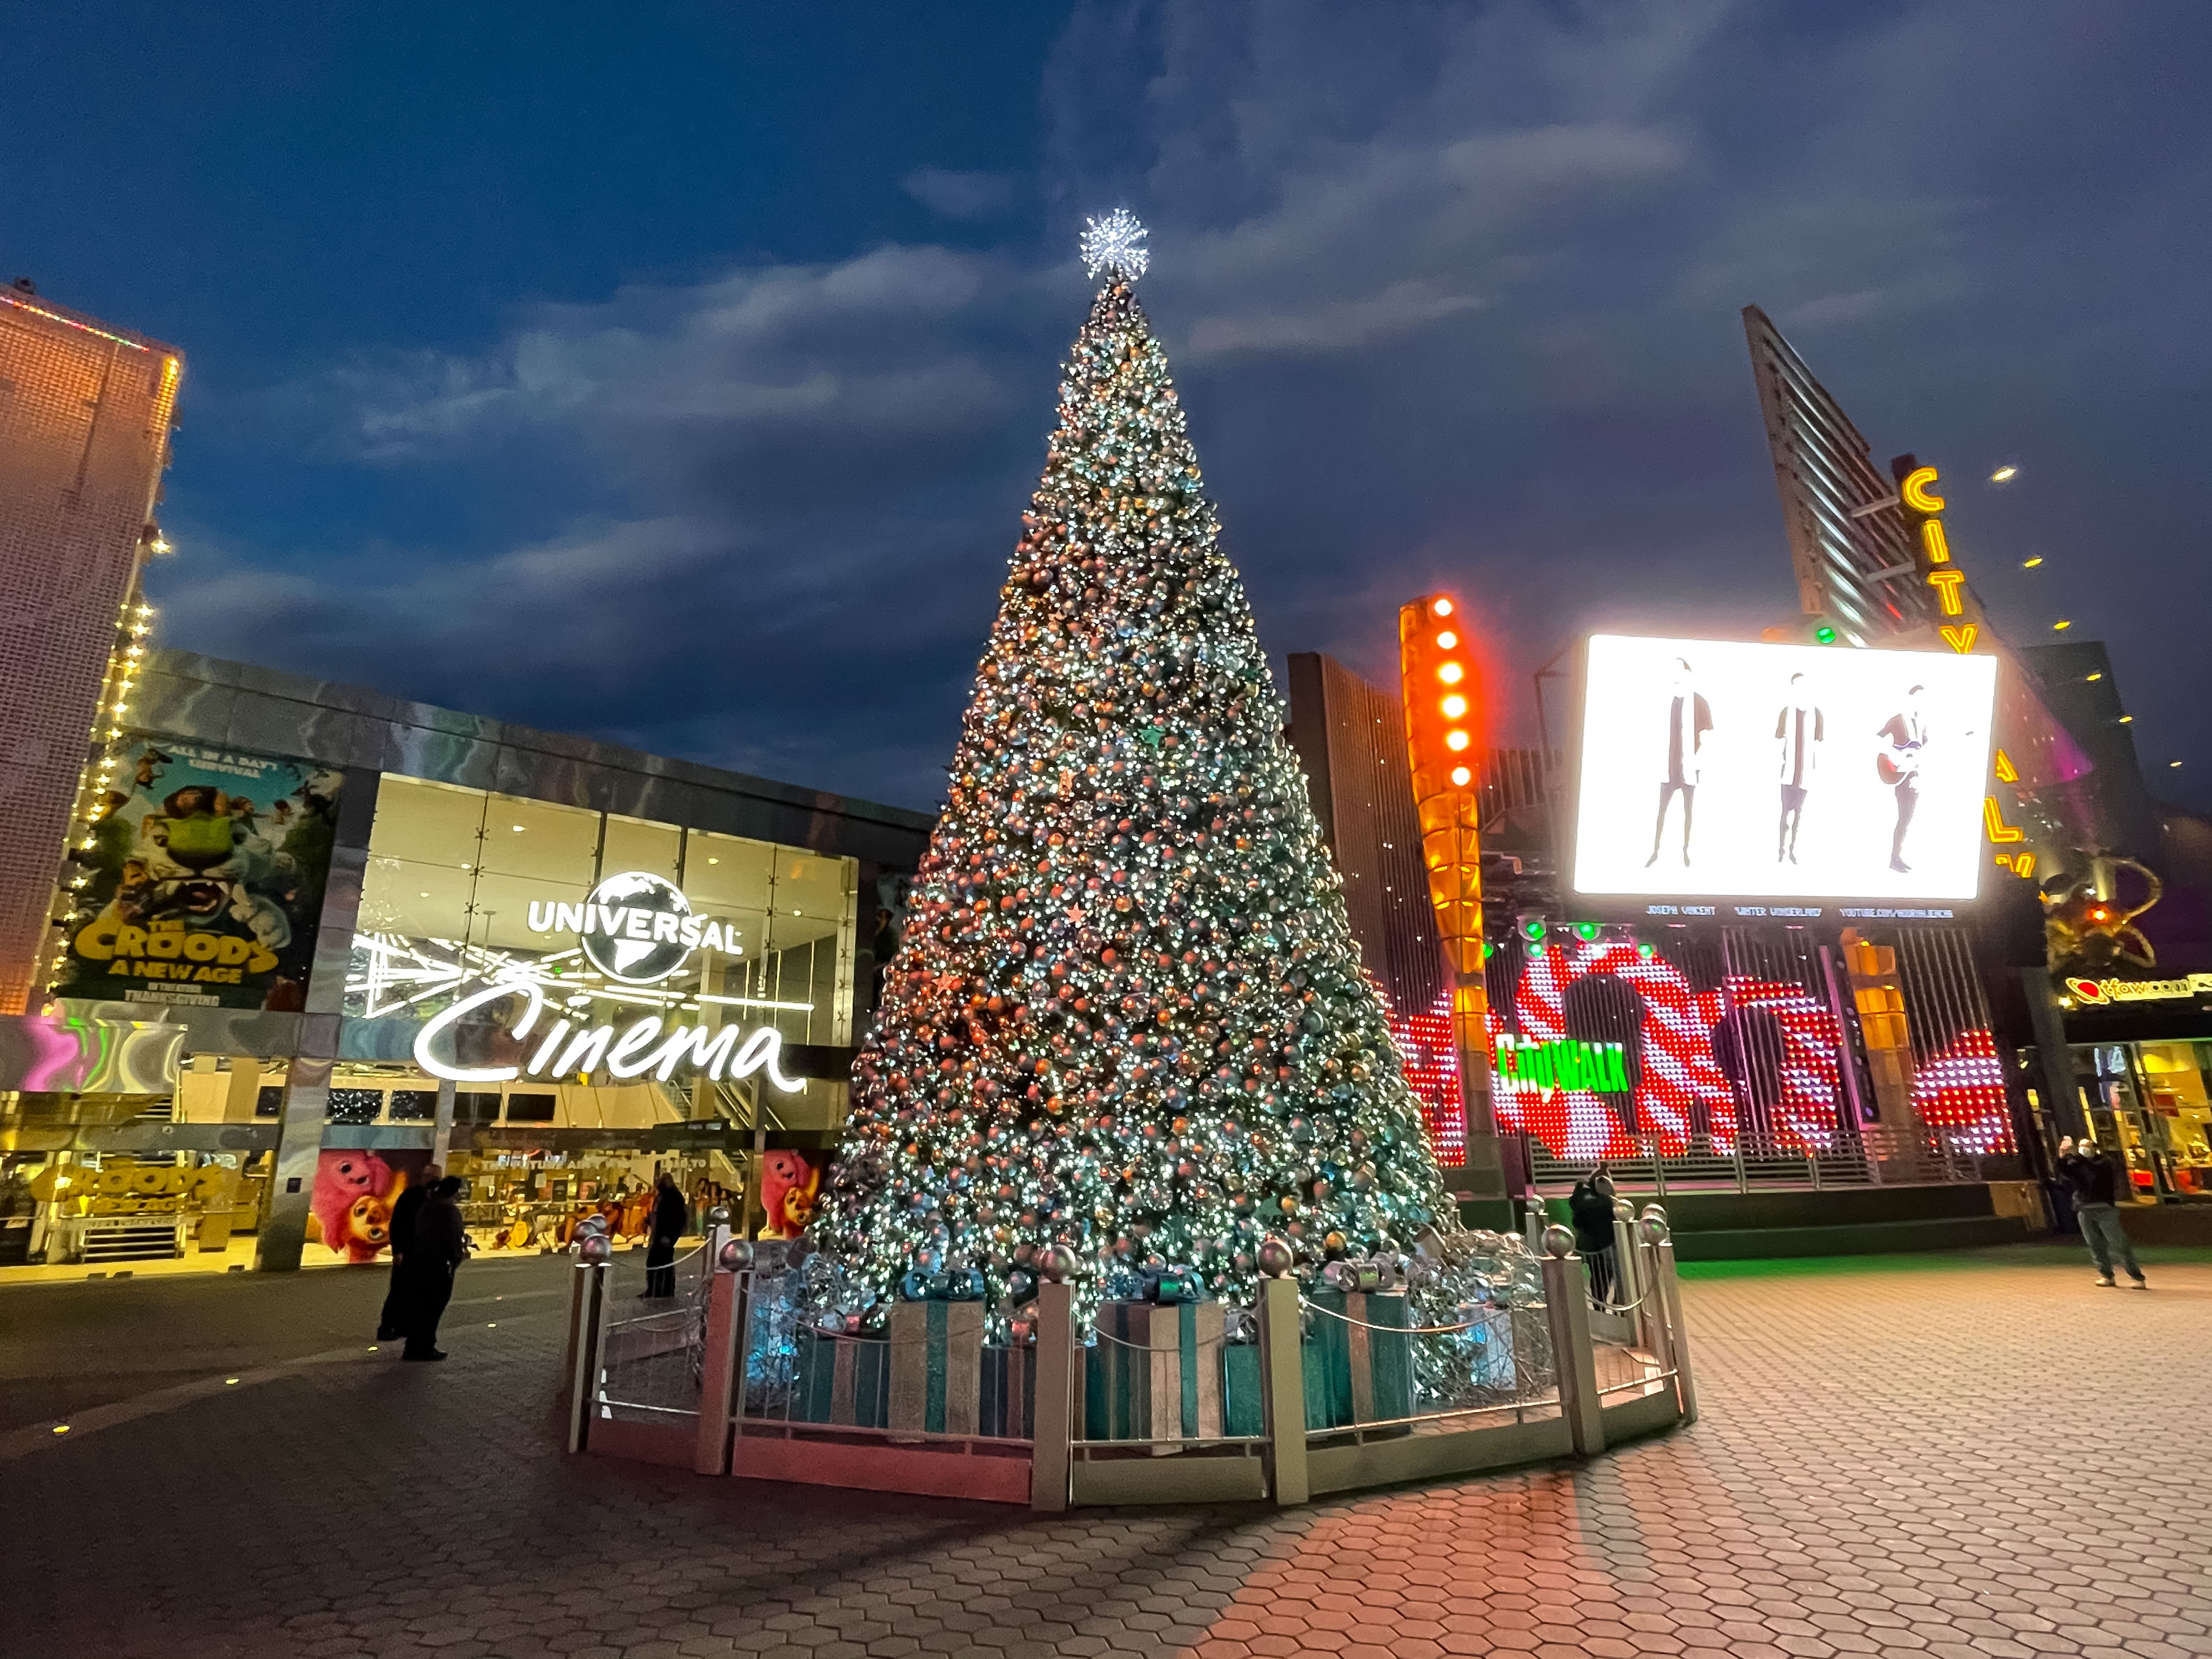 Ein Weihnachtsbaum auf der Universal City Walk Promenade in Universal City, Kalifornien am 24. Dezember 2020 | Quelle: Getty Images